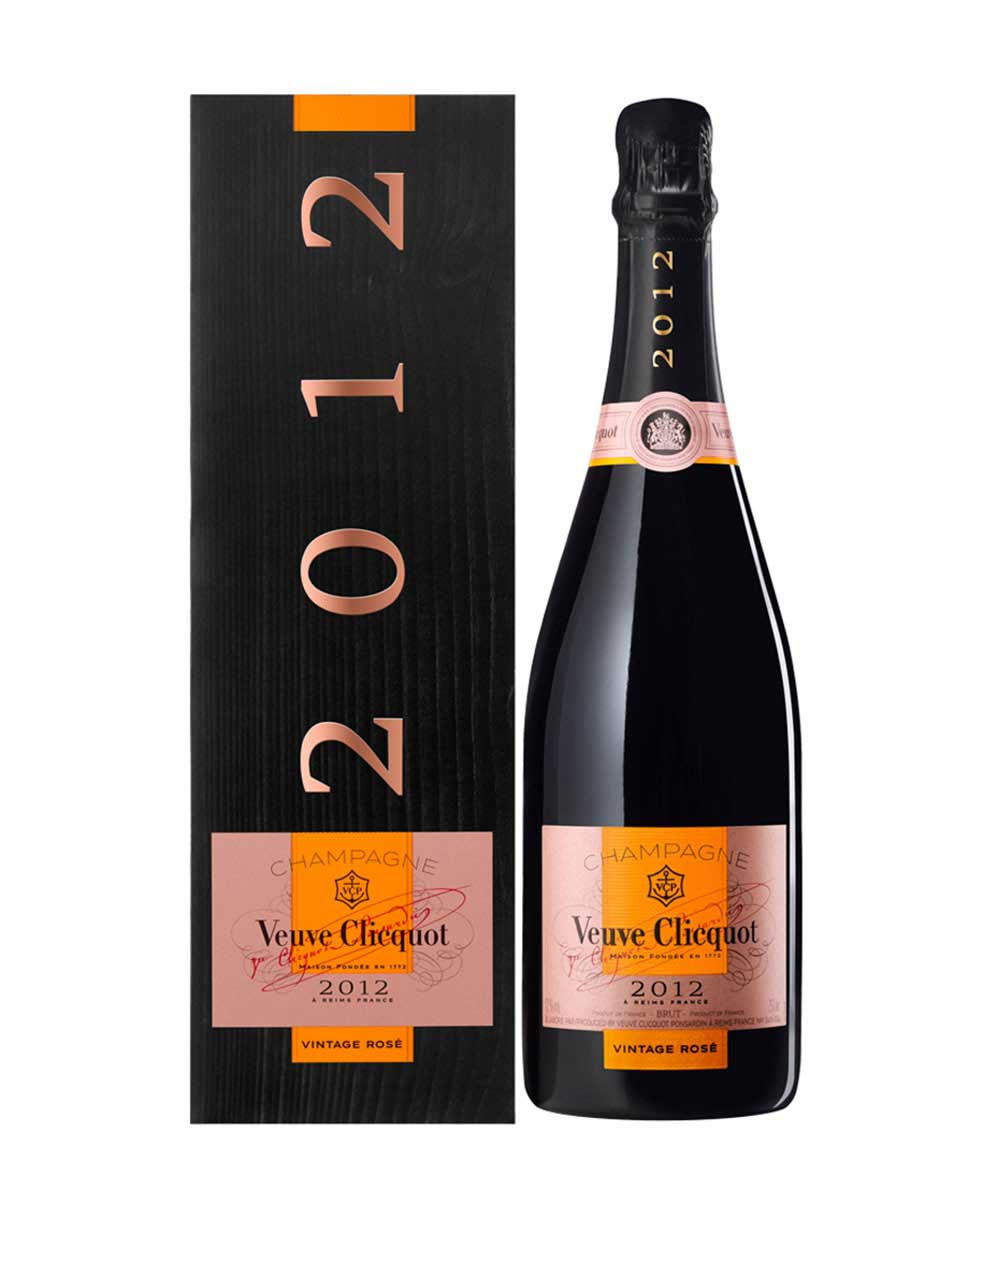 Veuve Clicquot Vintage Rose Brut Champagne 2012 Sparkling wine Champagne France